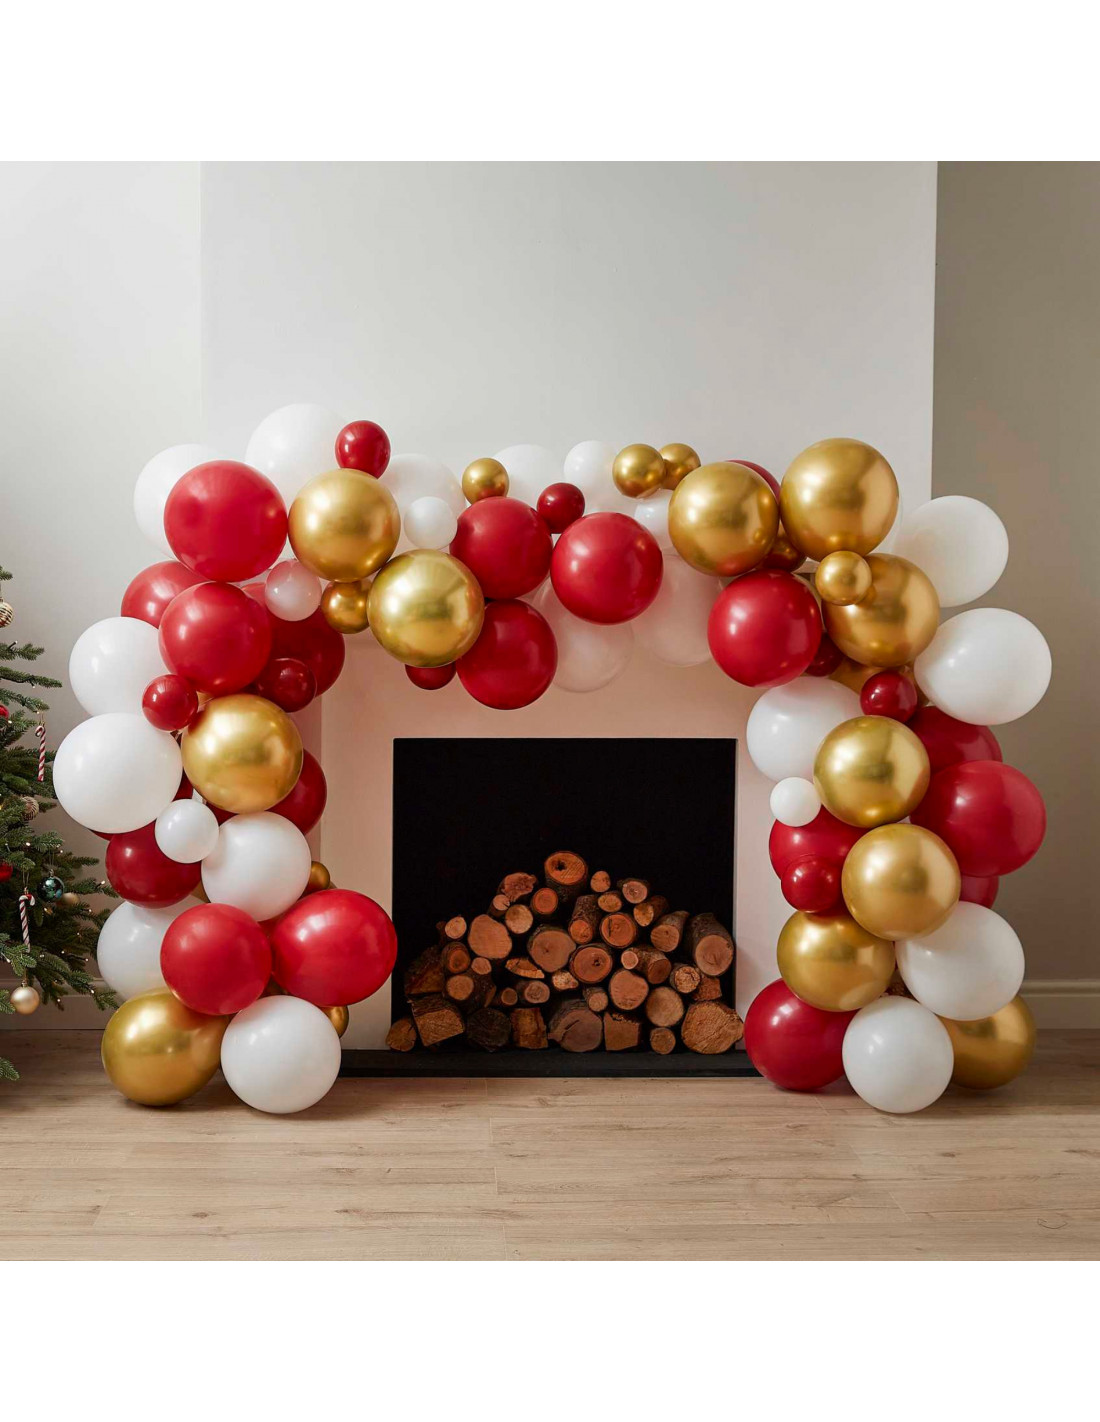 Arche de ballon Nouvel An blanc et or - Decoration Nouvel an